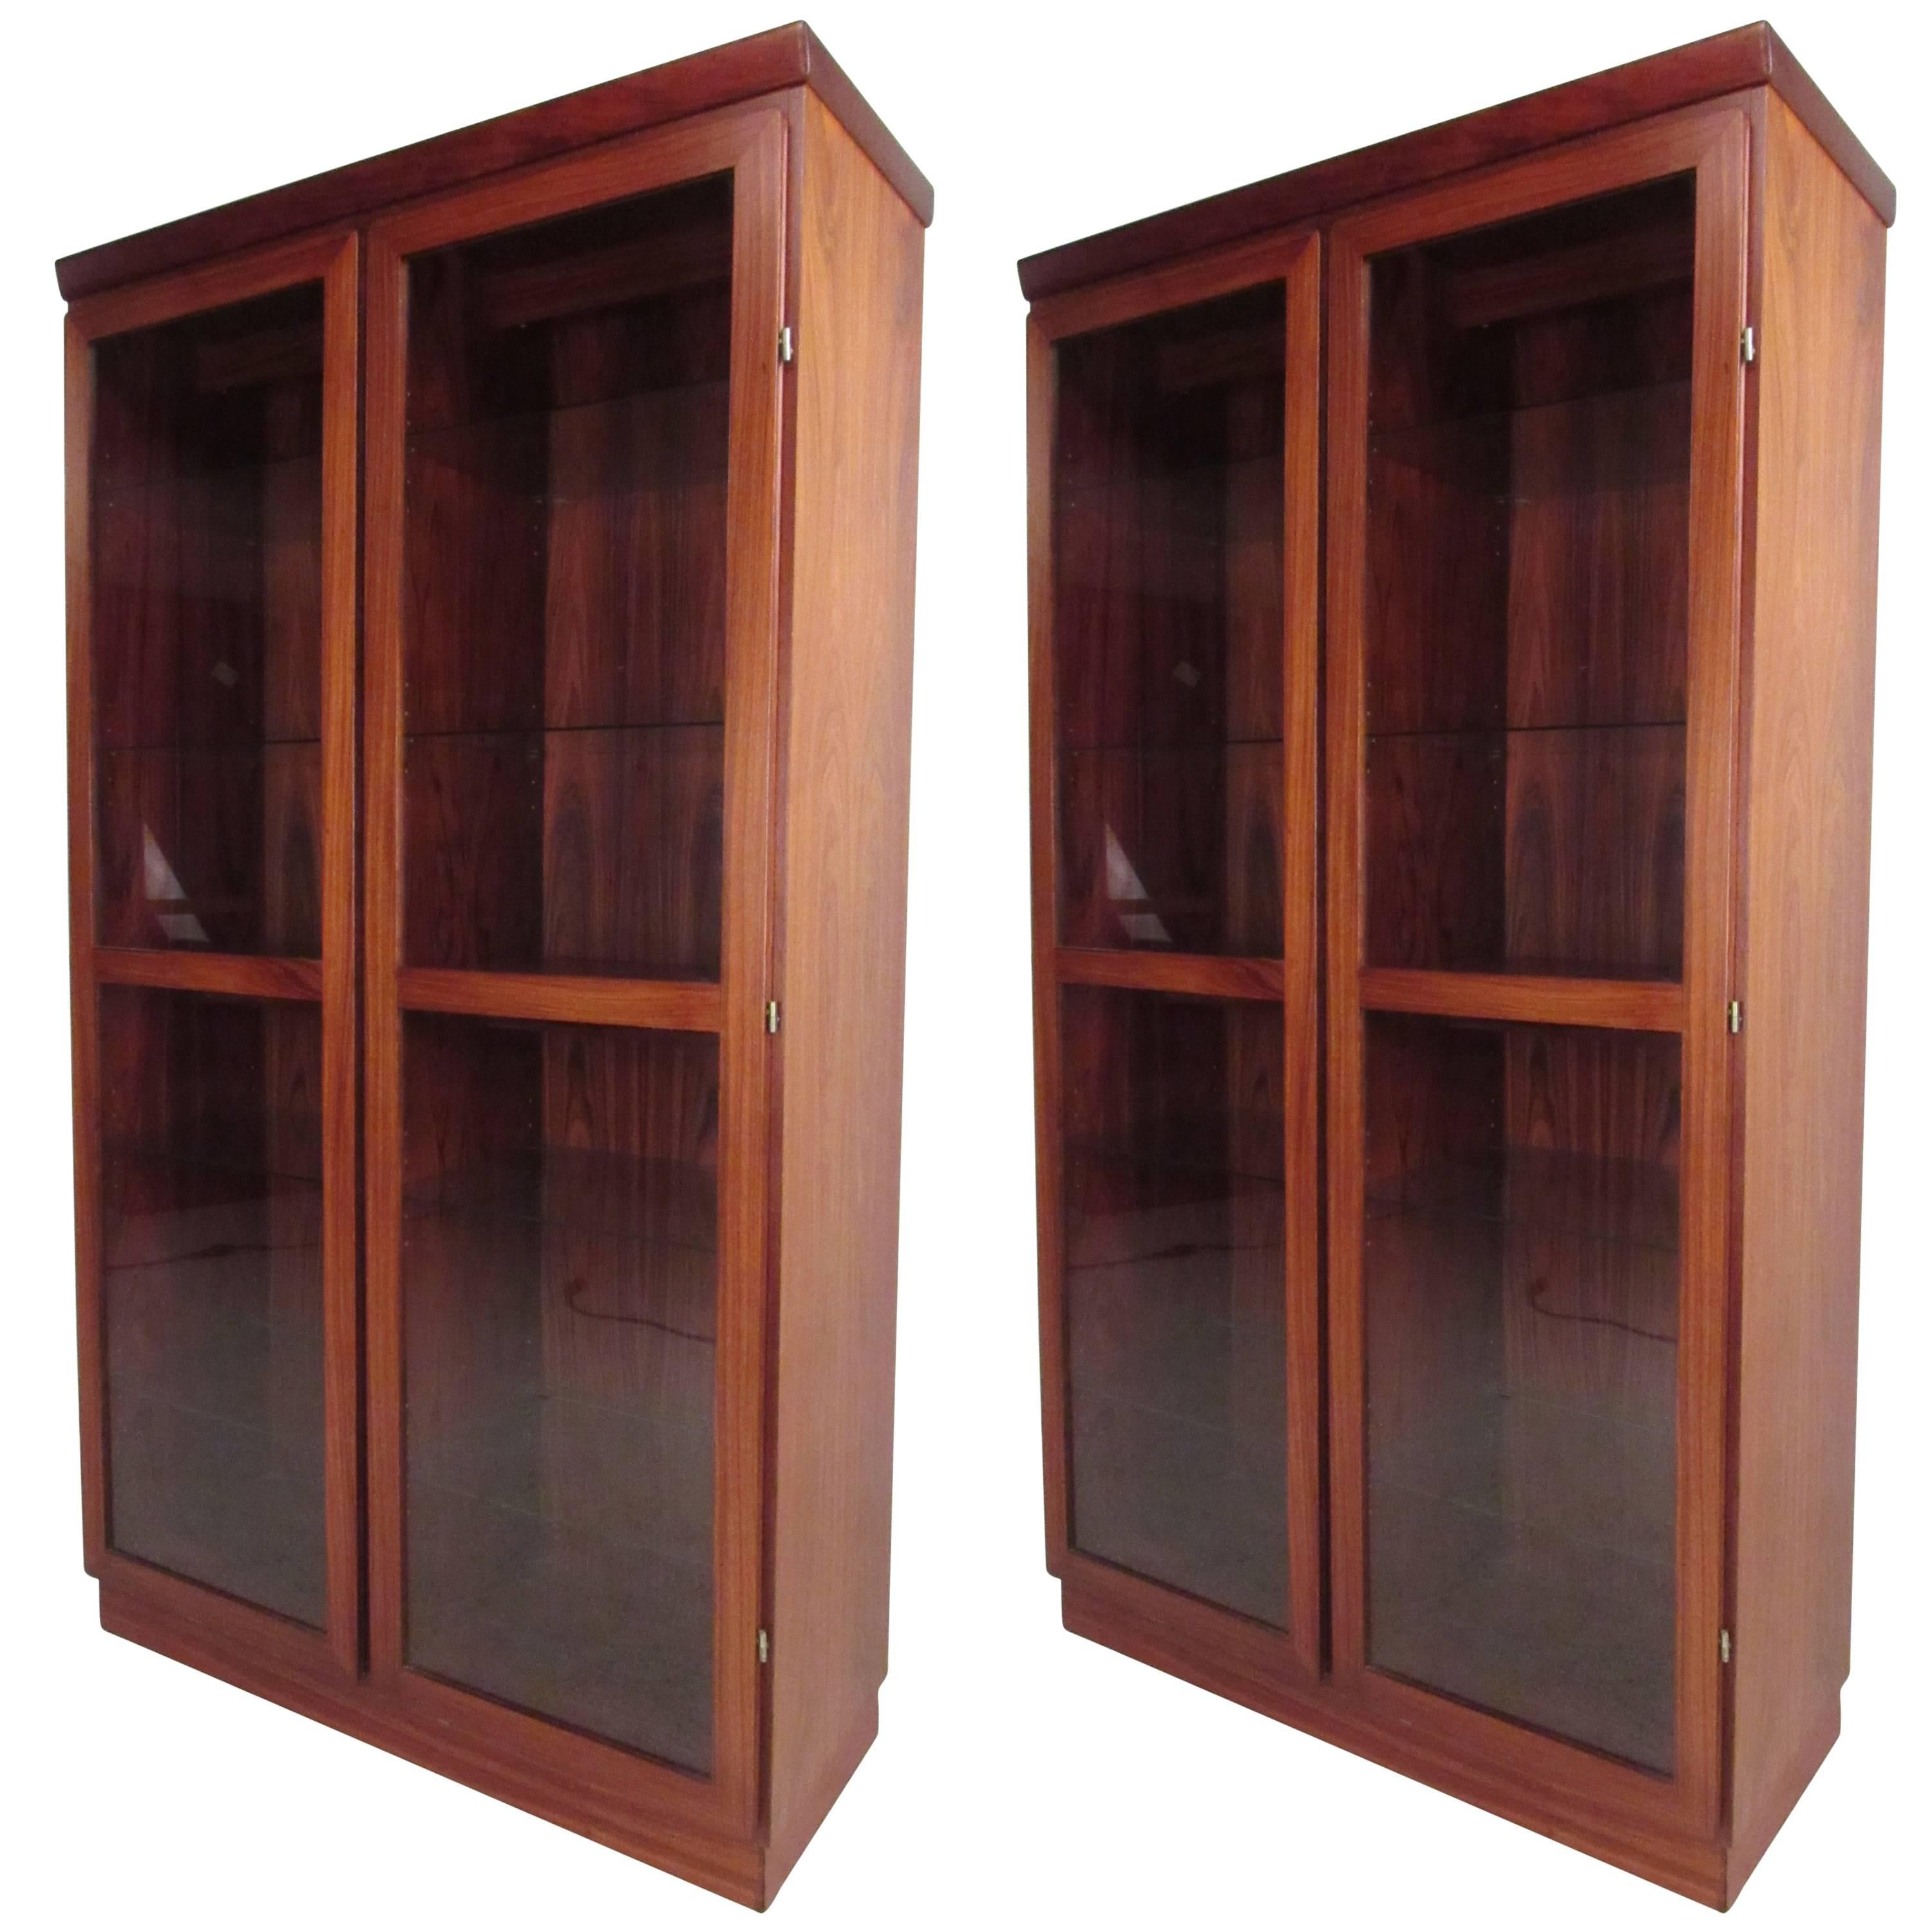 Rosewood Display Cabinet by Skovby